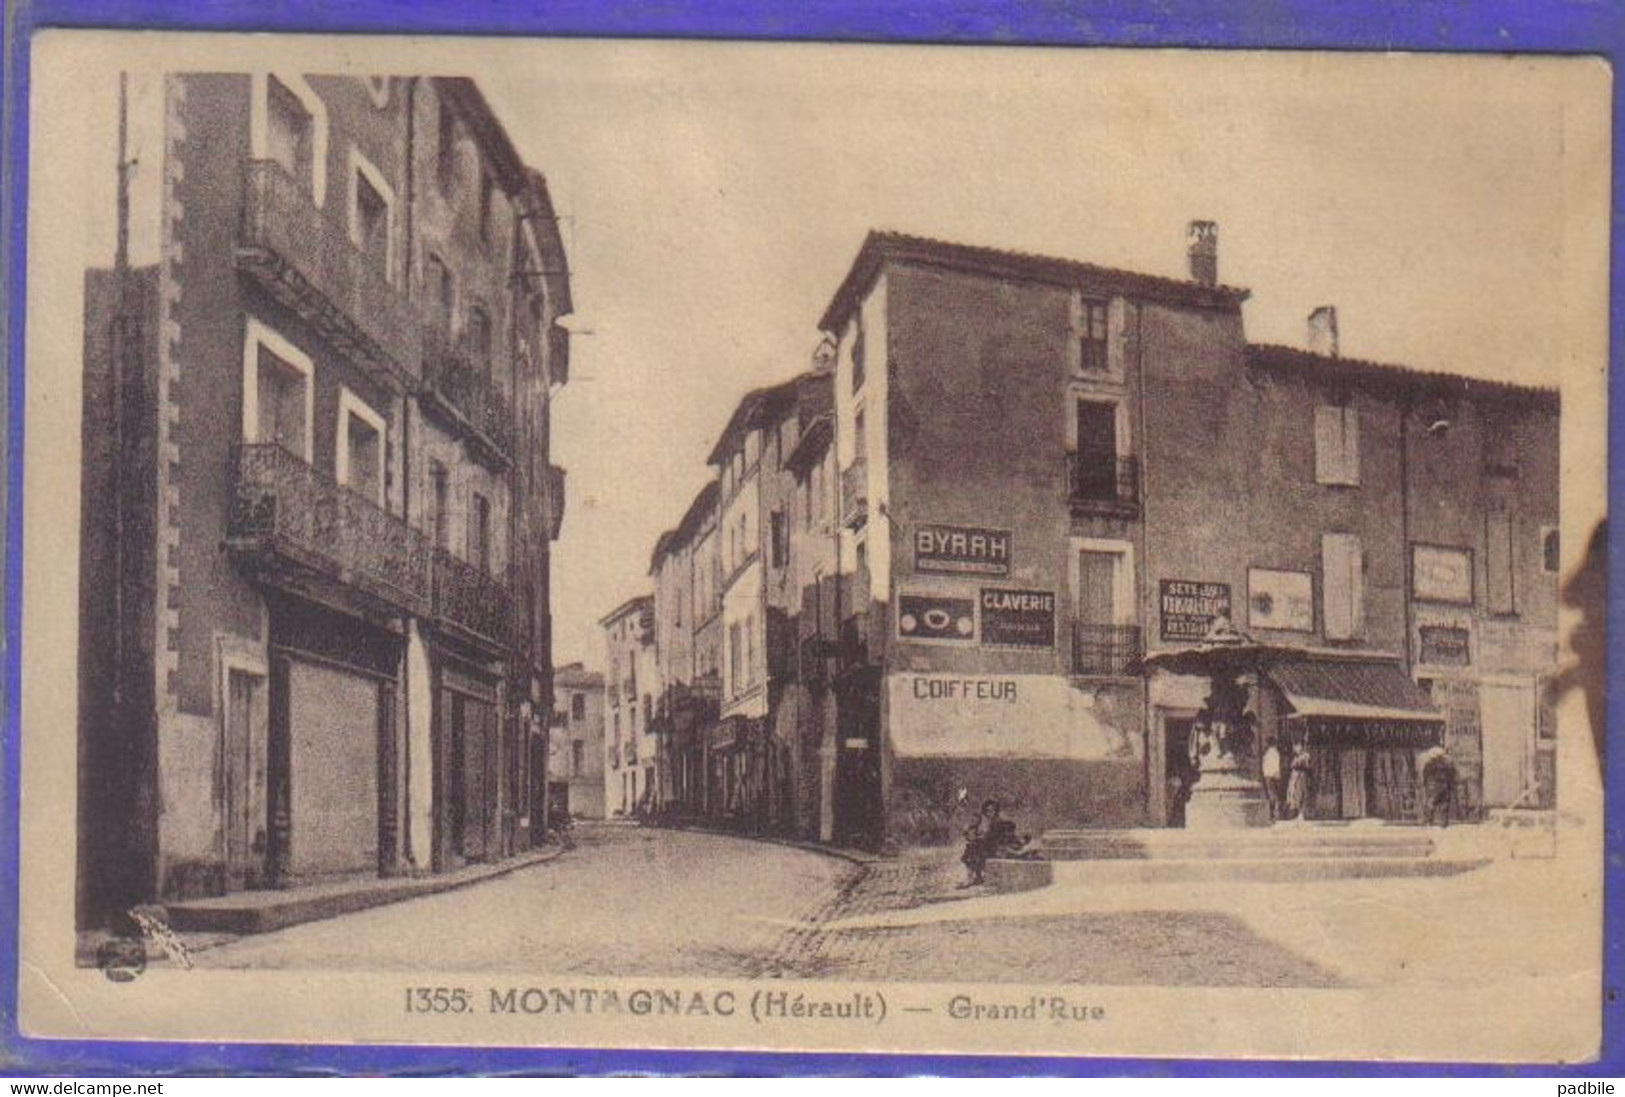 Montagnac - carte postale 34. Montagnac Grand'Rue coiffeur et fontaine très  beau plan